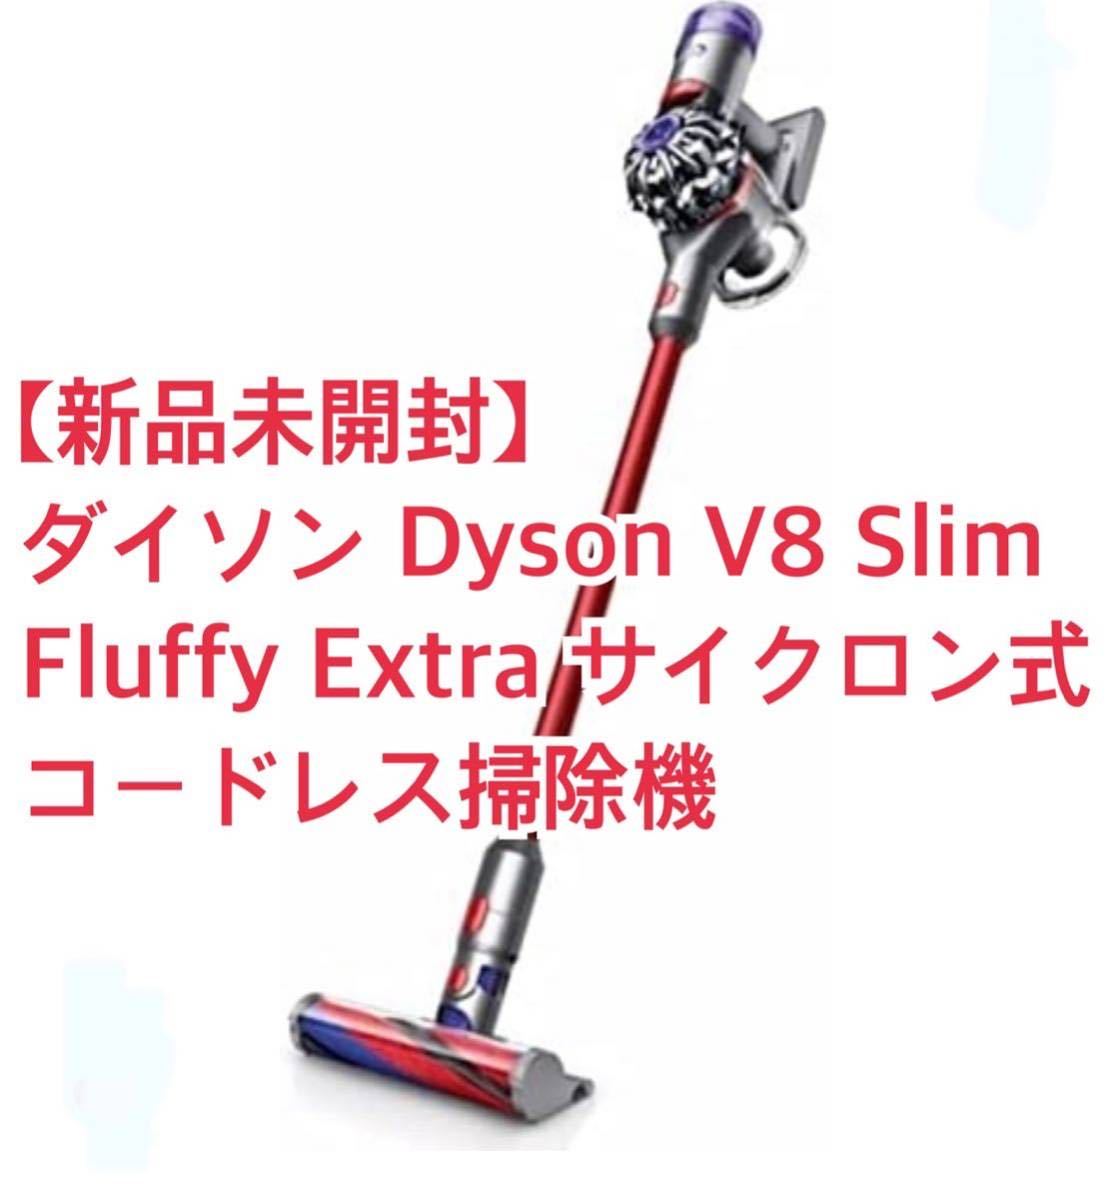 【新品未開封】ダイソン Dyson V8 Slim Fluffy Extra サイクロン式 コードレス掃除機